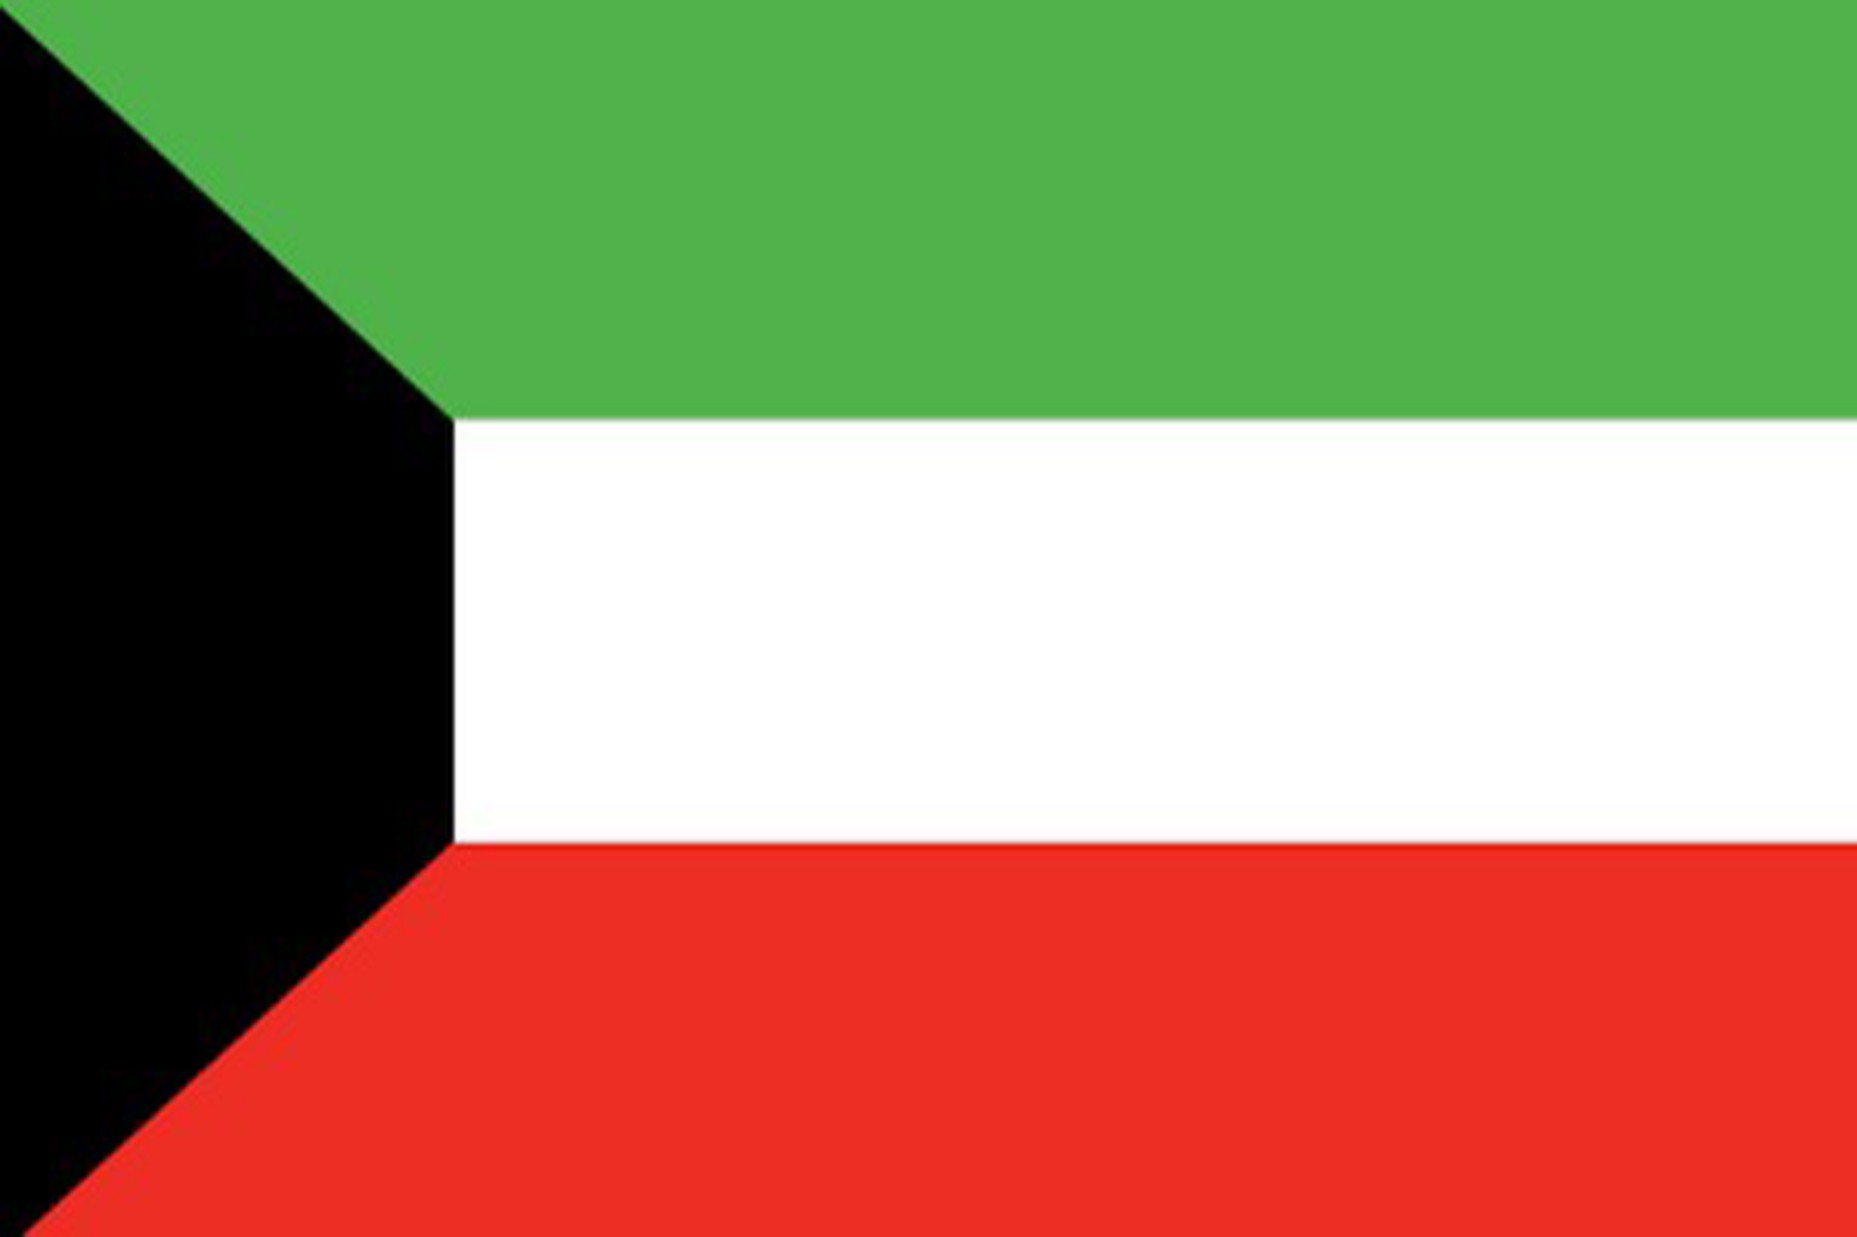 Kuwait Document Legalization Authentication Services